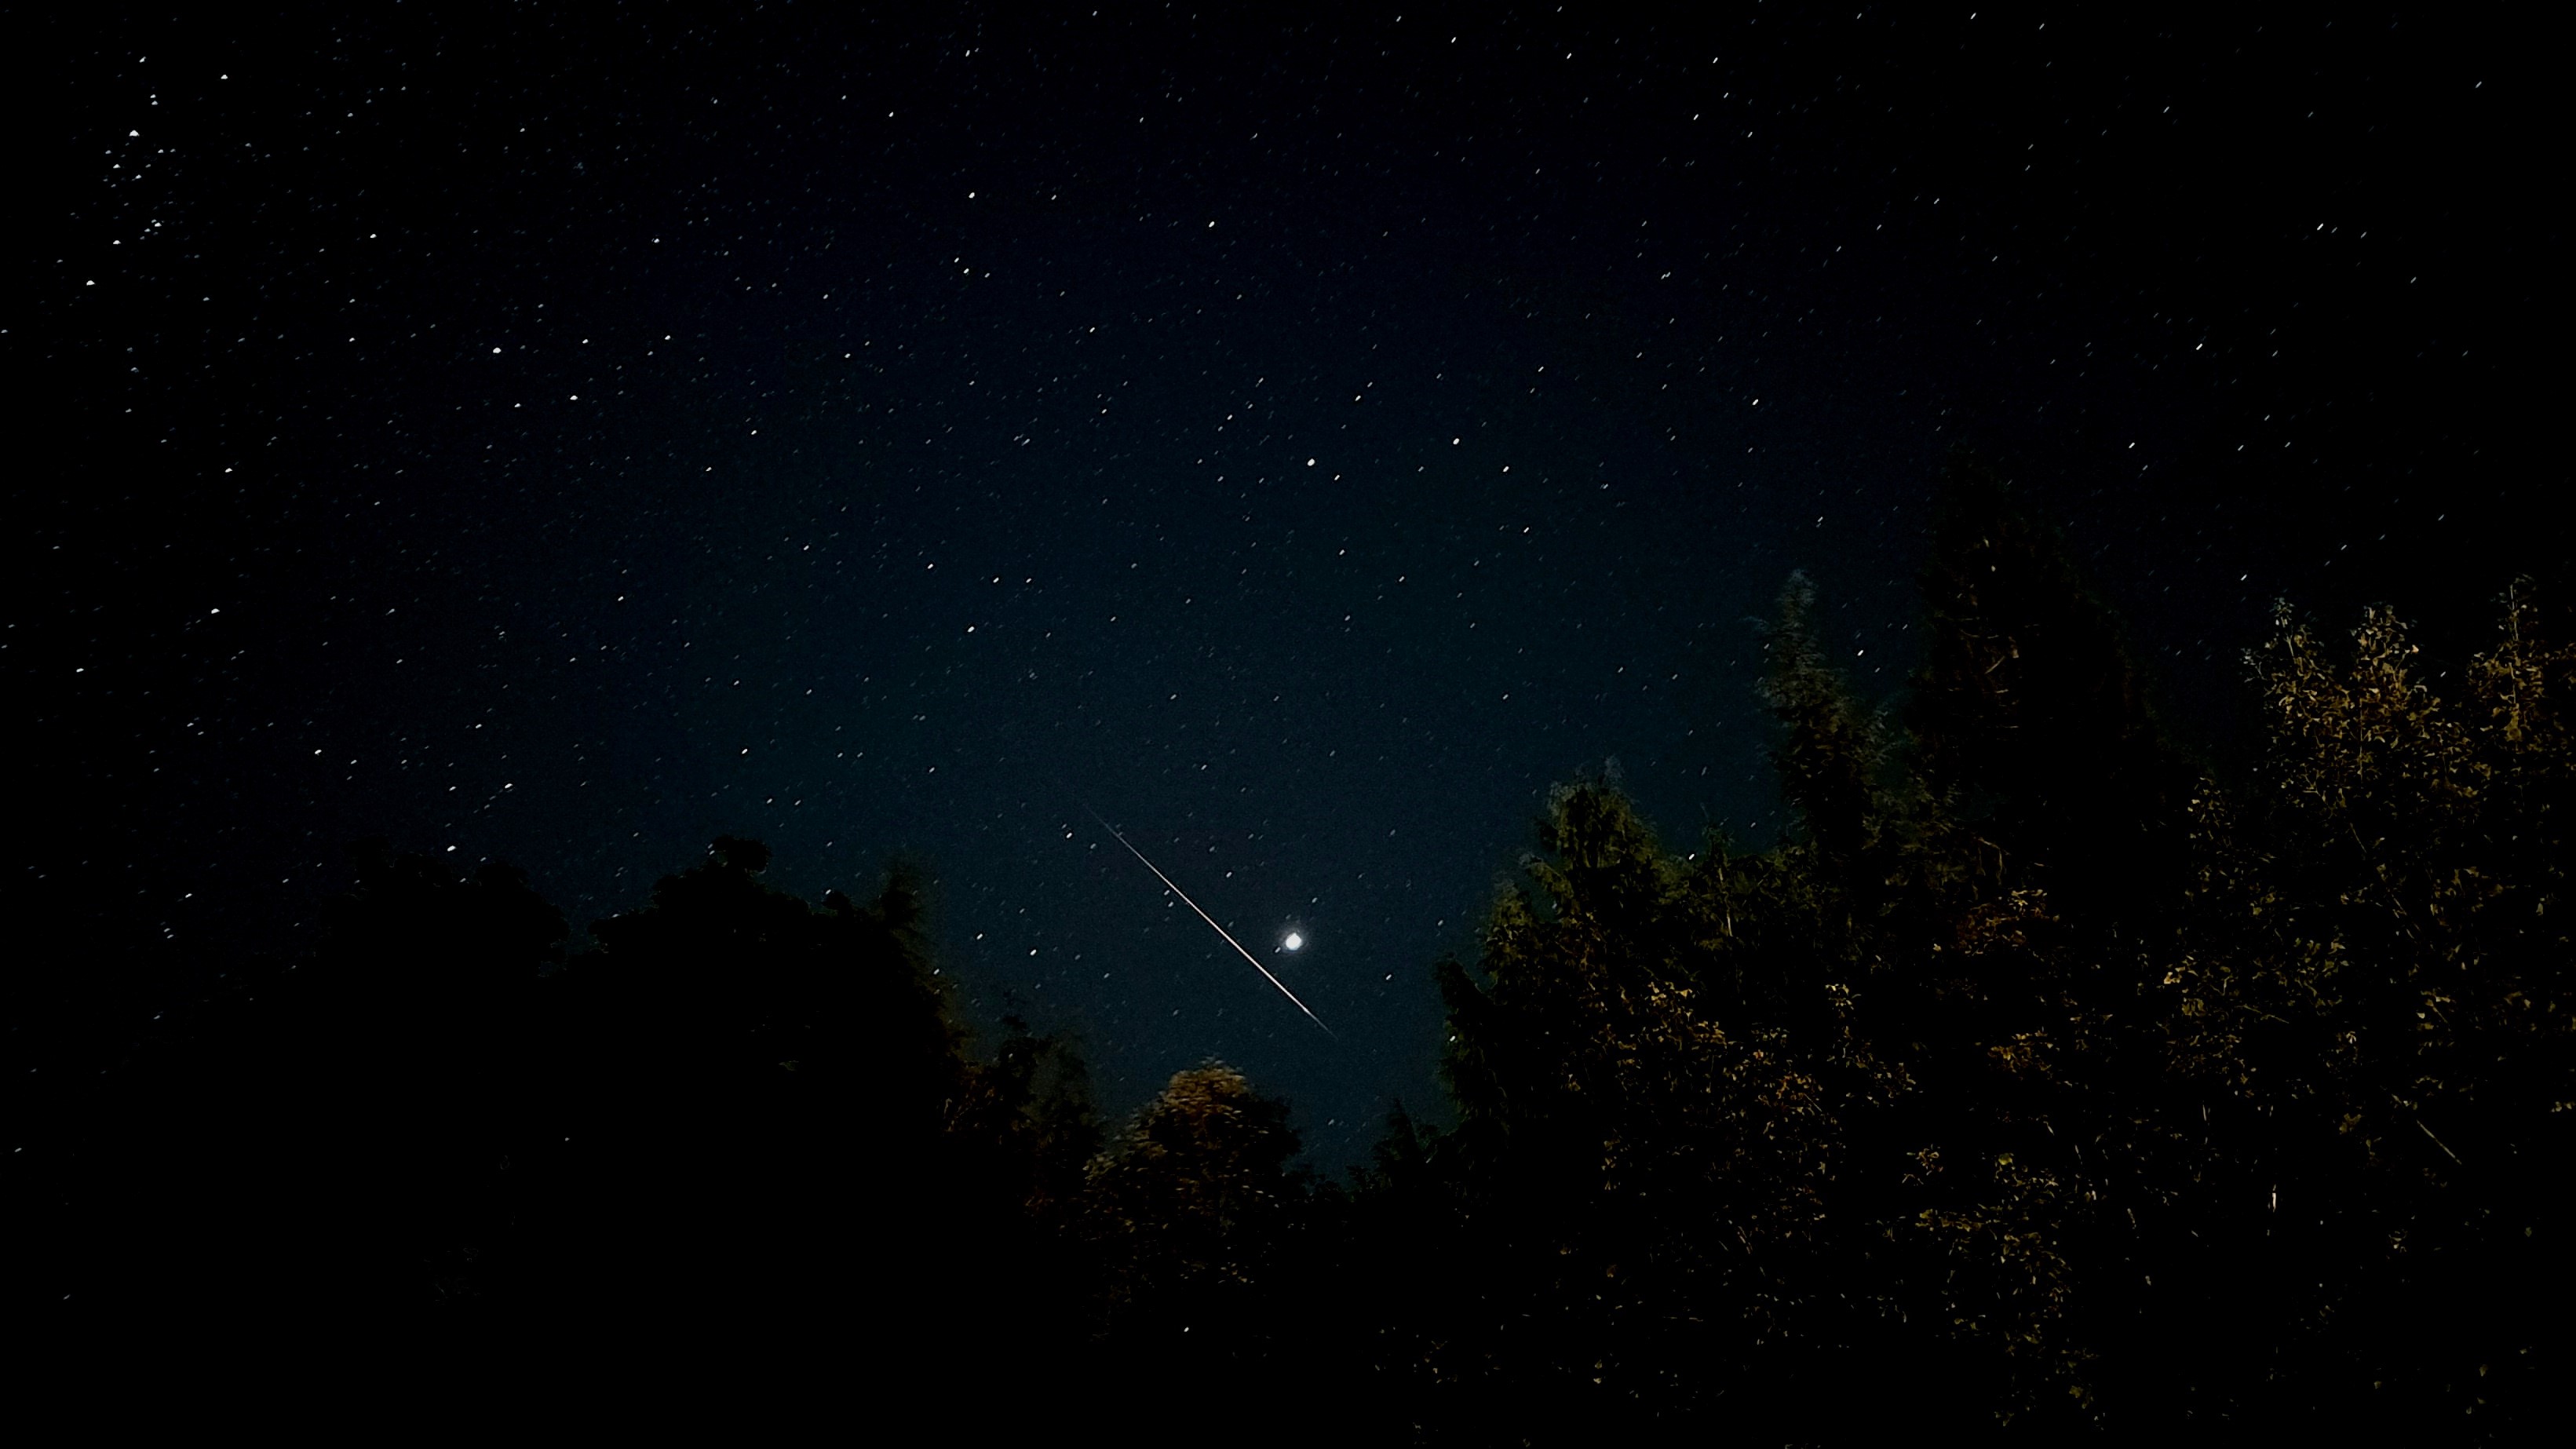 Sebuah meteor menonjol melintas di langit di bawah planet Jupiter yang cerah